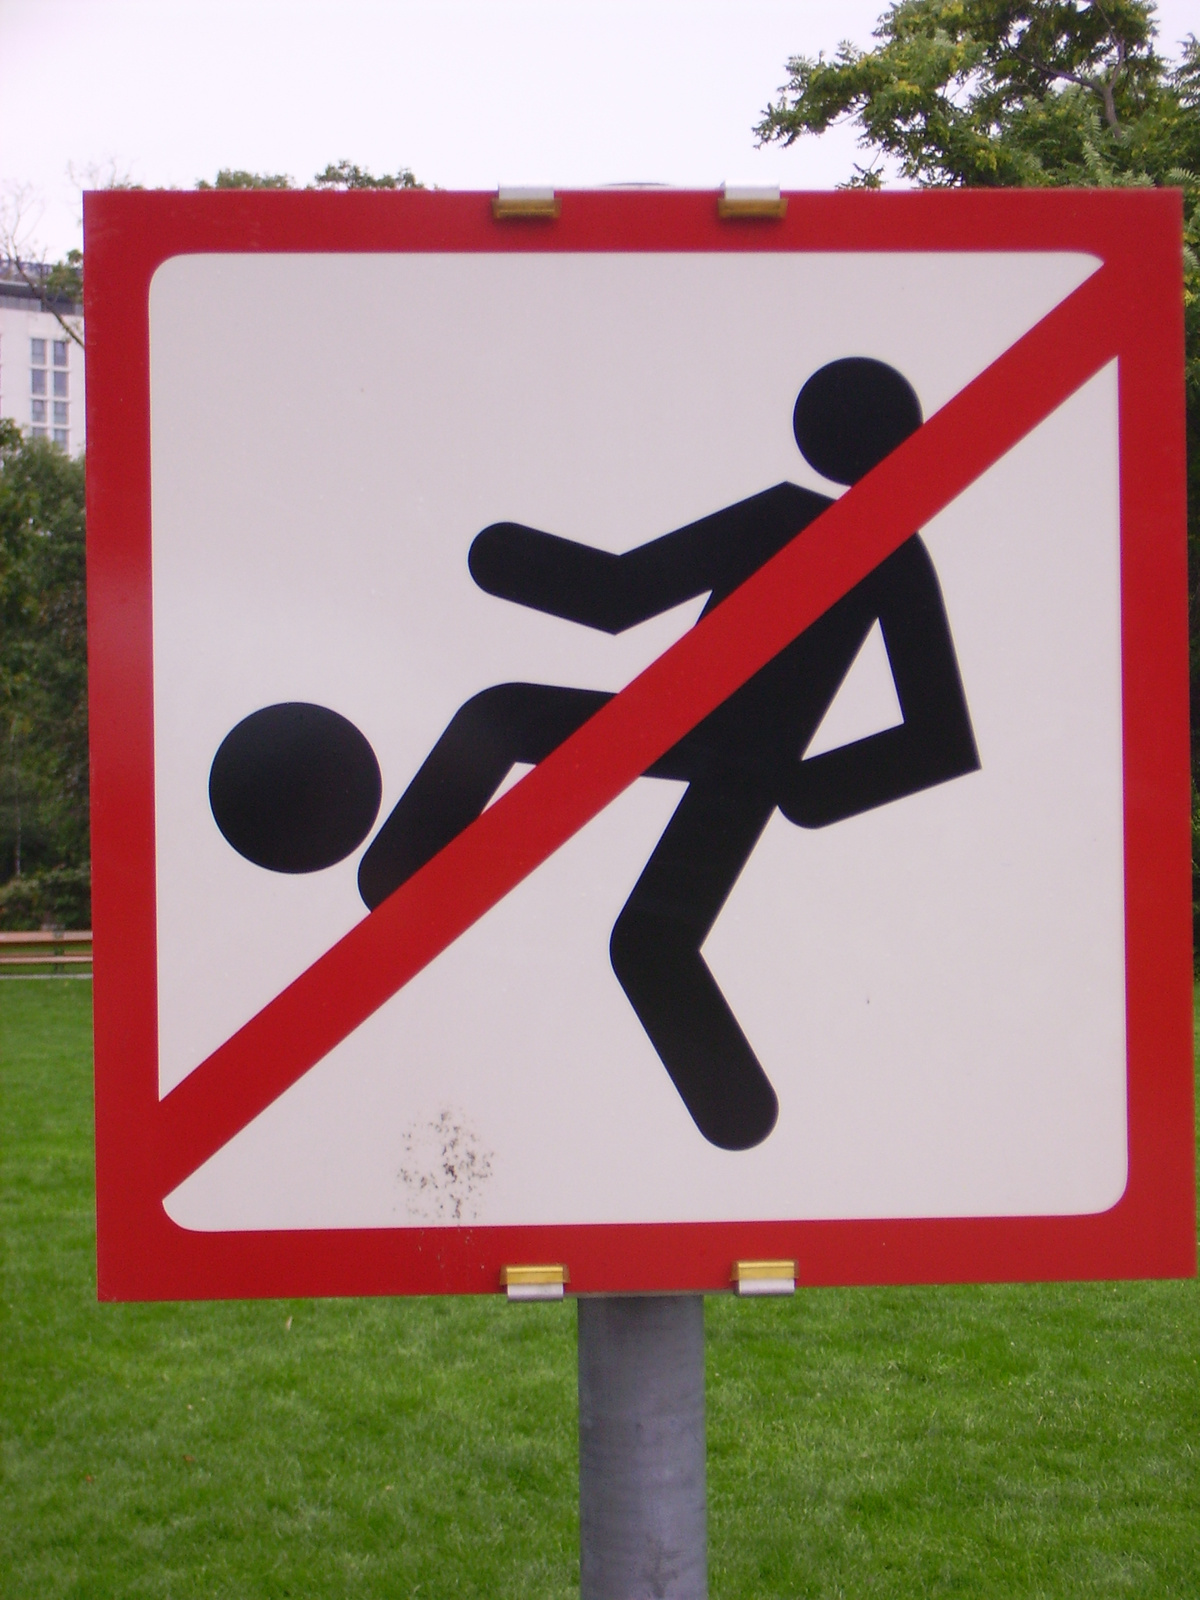 se focizni, se szexelni nem szabad a parkban